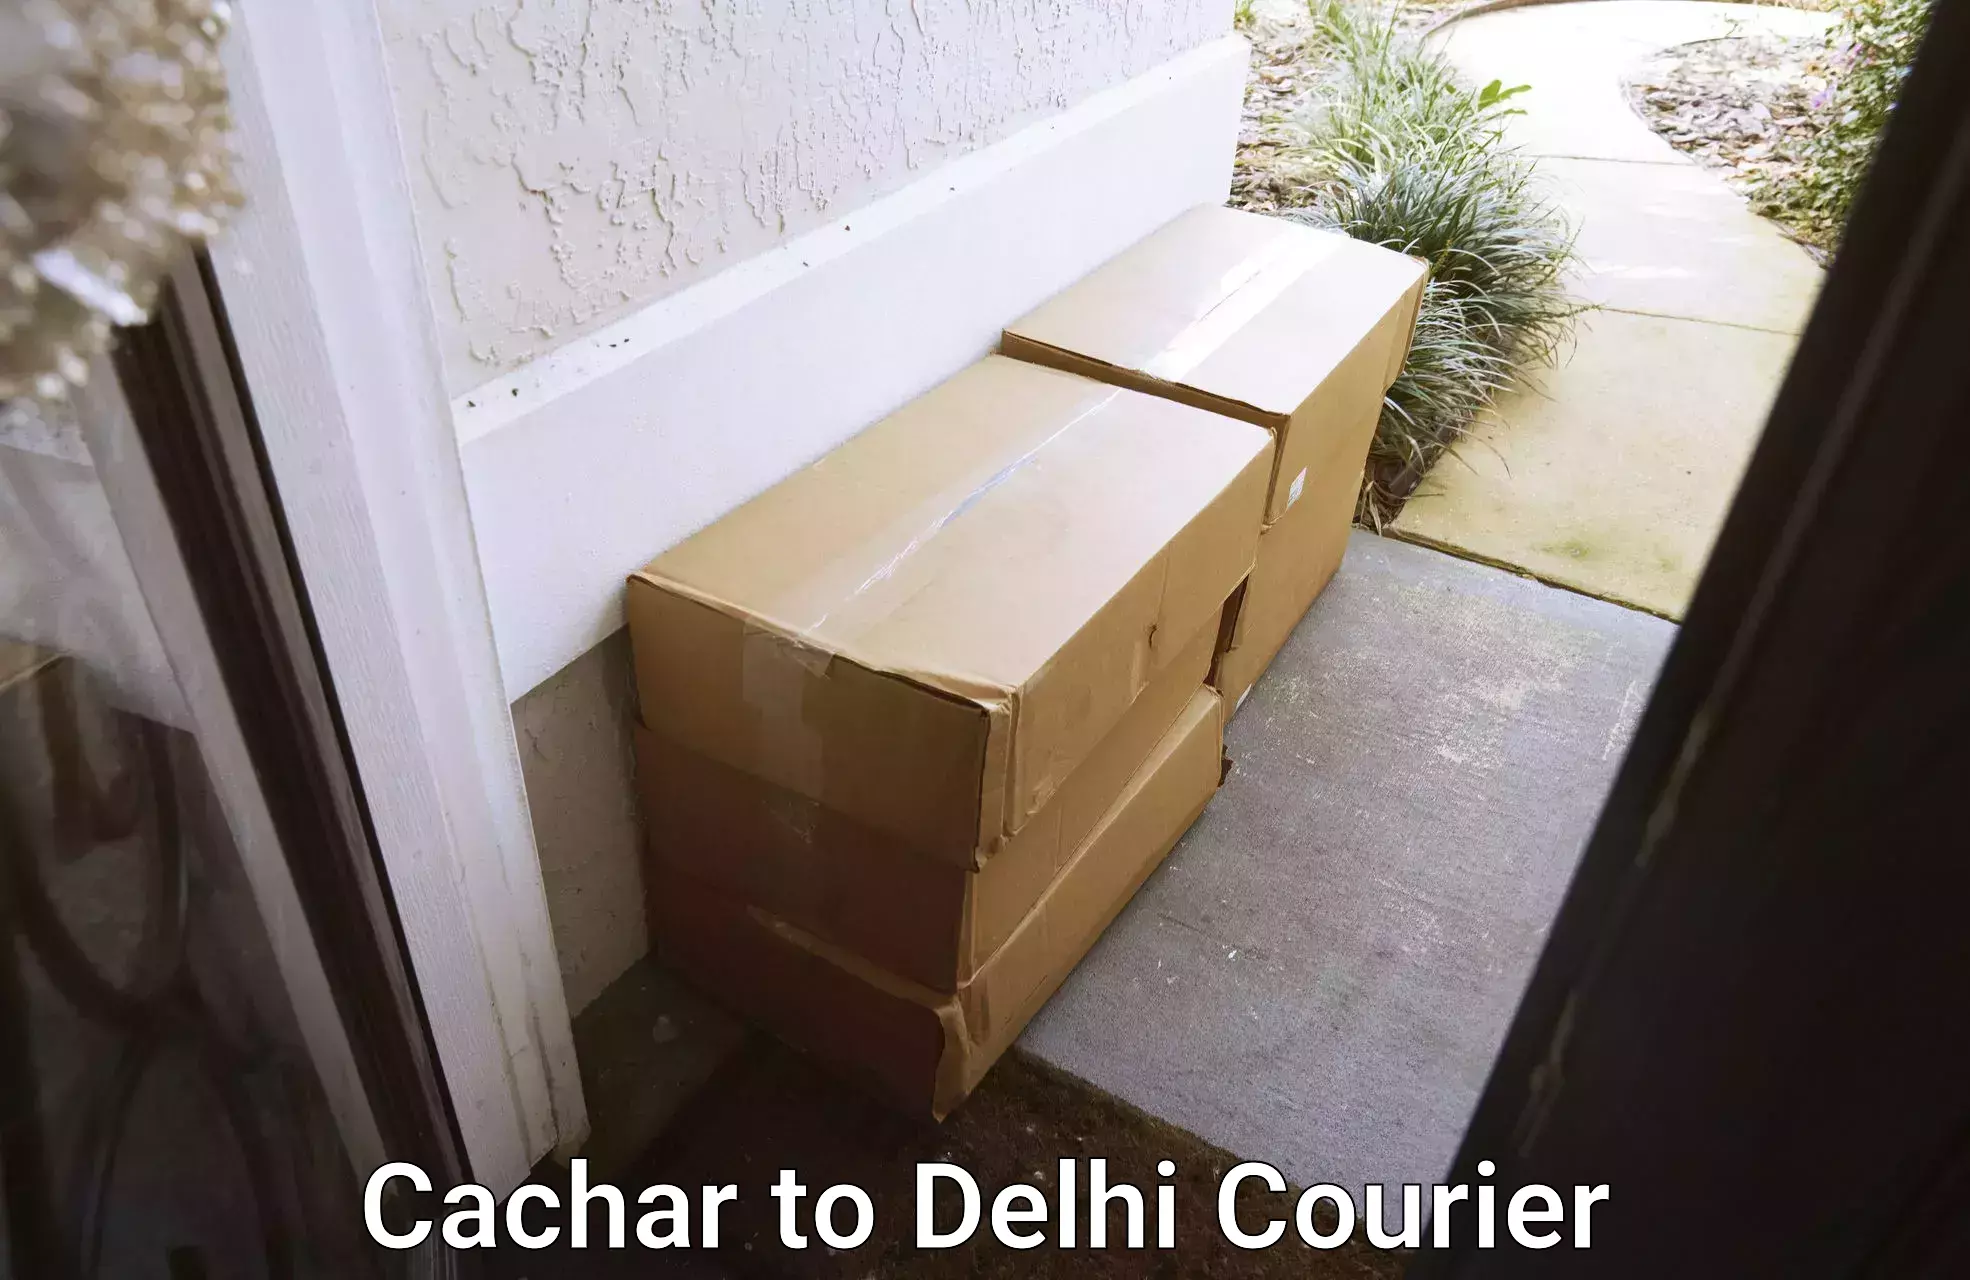 Customer-focused courier Cachar to Sansad Marg